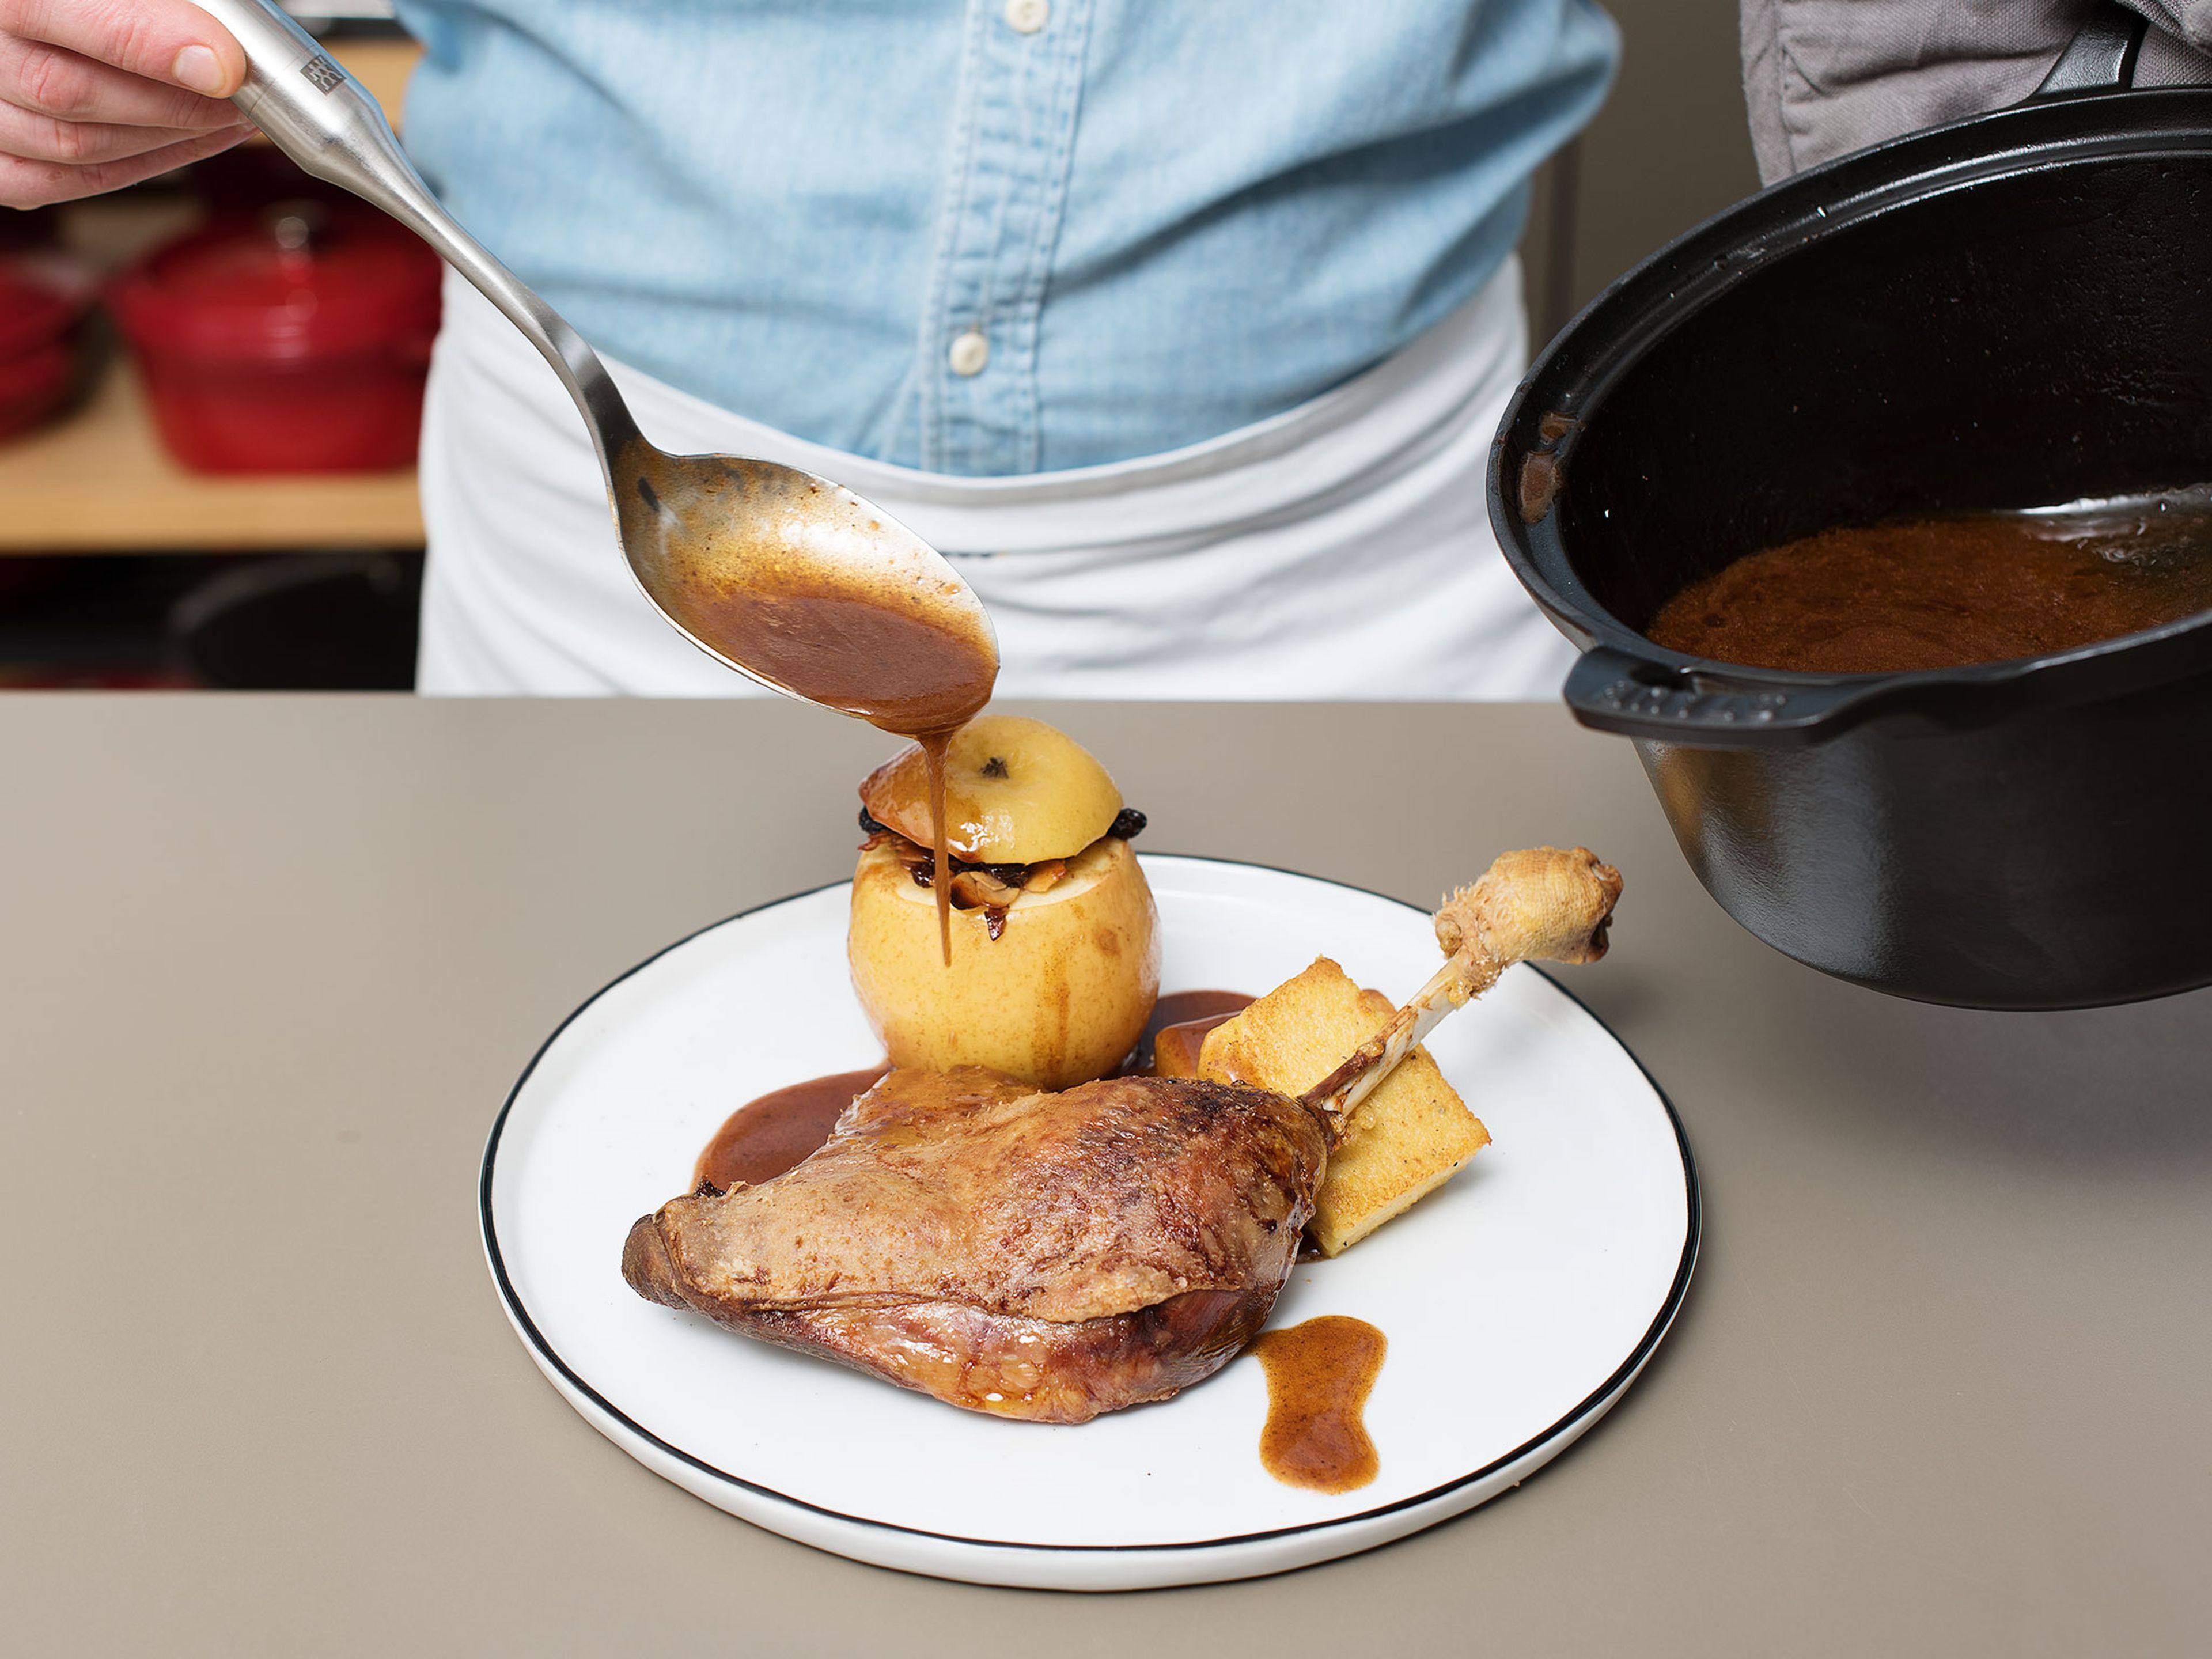 Polentastücke, Bratapfel und Gänsekeule auf einem Teller anrichten und Soße darüber geben. Guten Appetit!